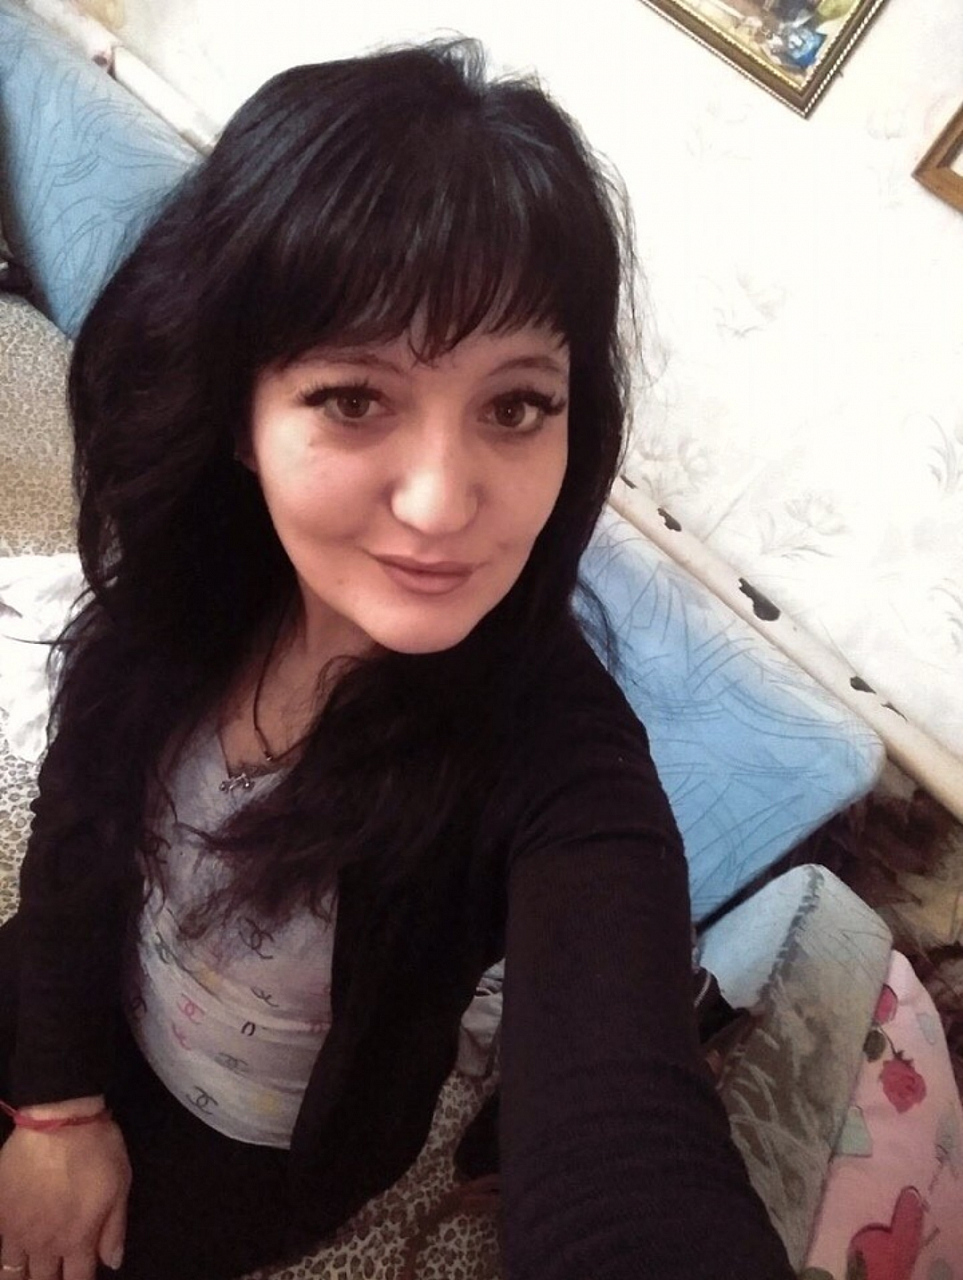 29-летняя Марина Чикишева бесследно пропала в Нижнем Новгороде